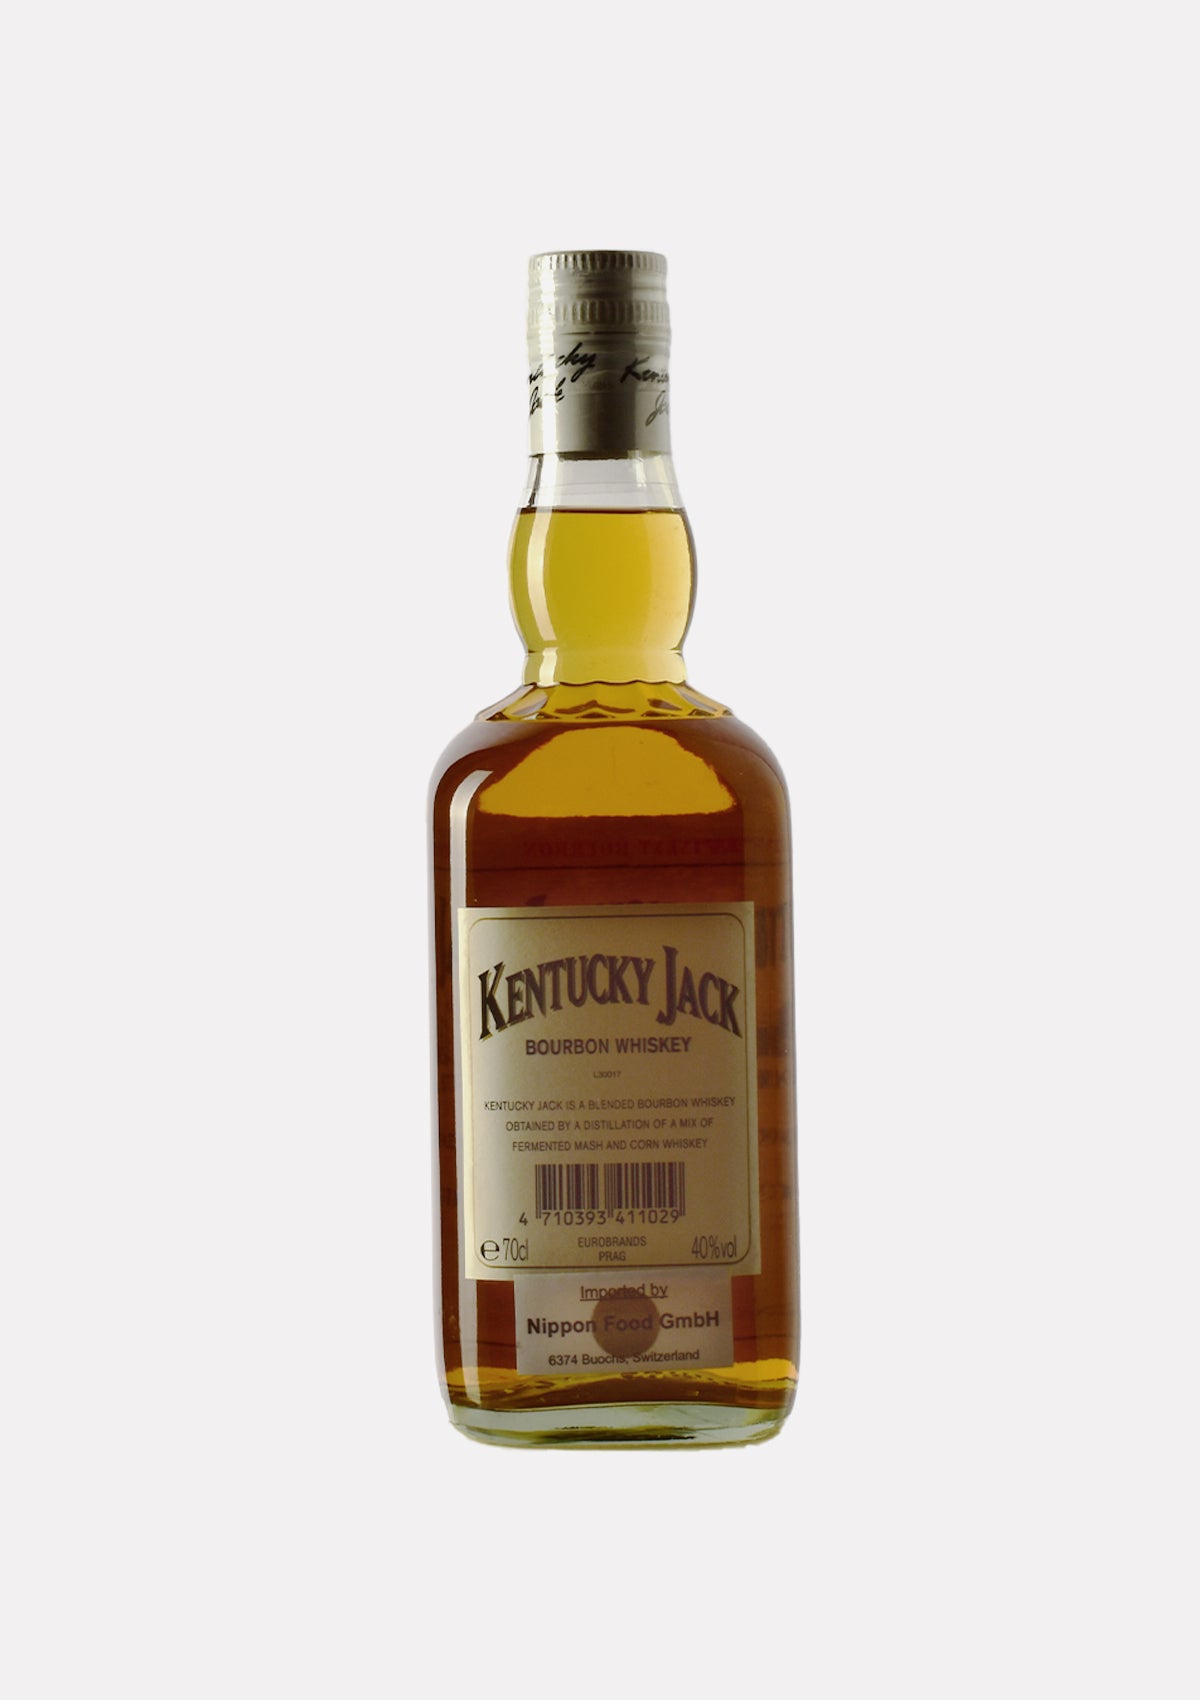 Kentucky Jack bottled for Eurobrands